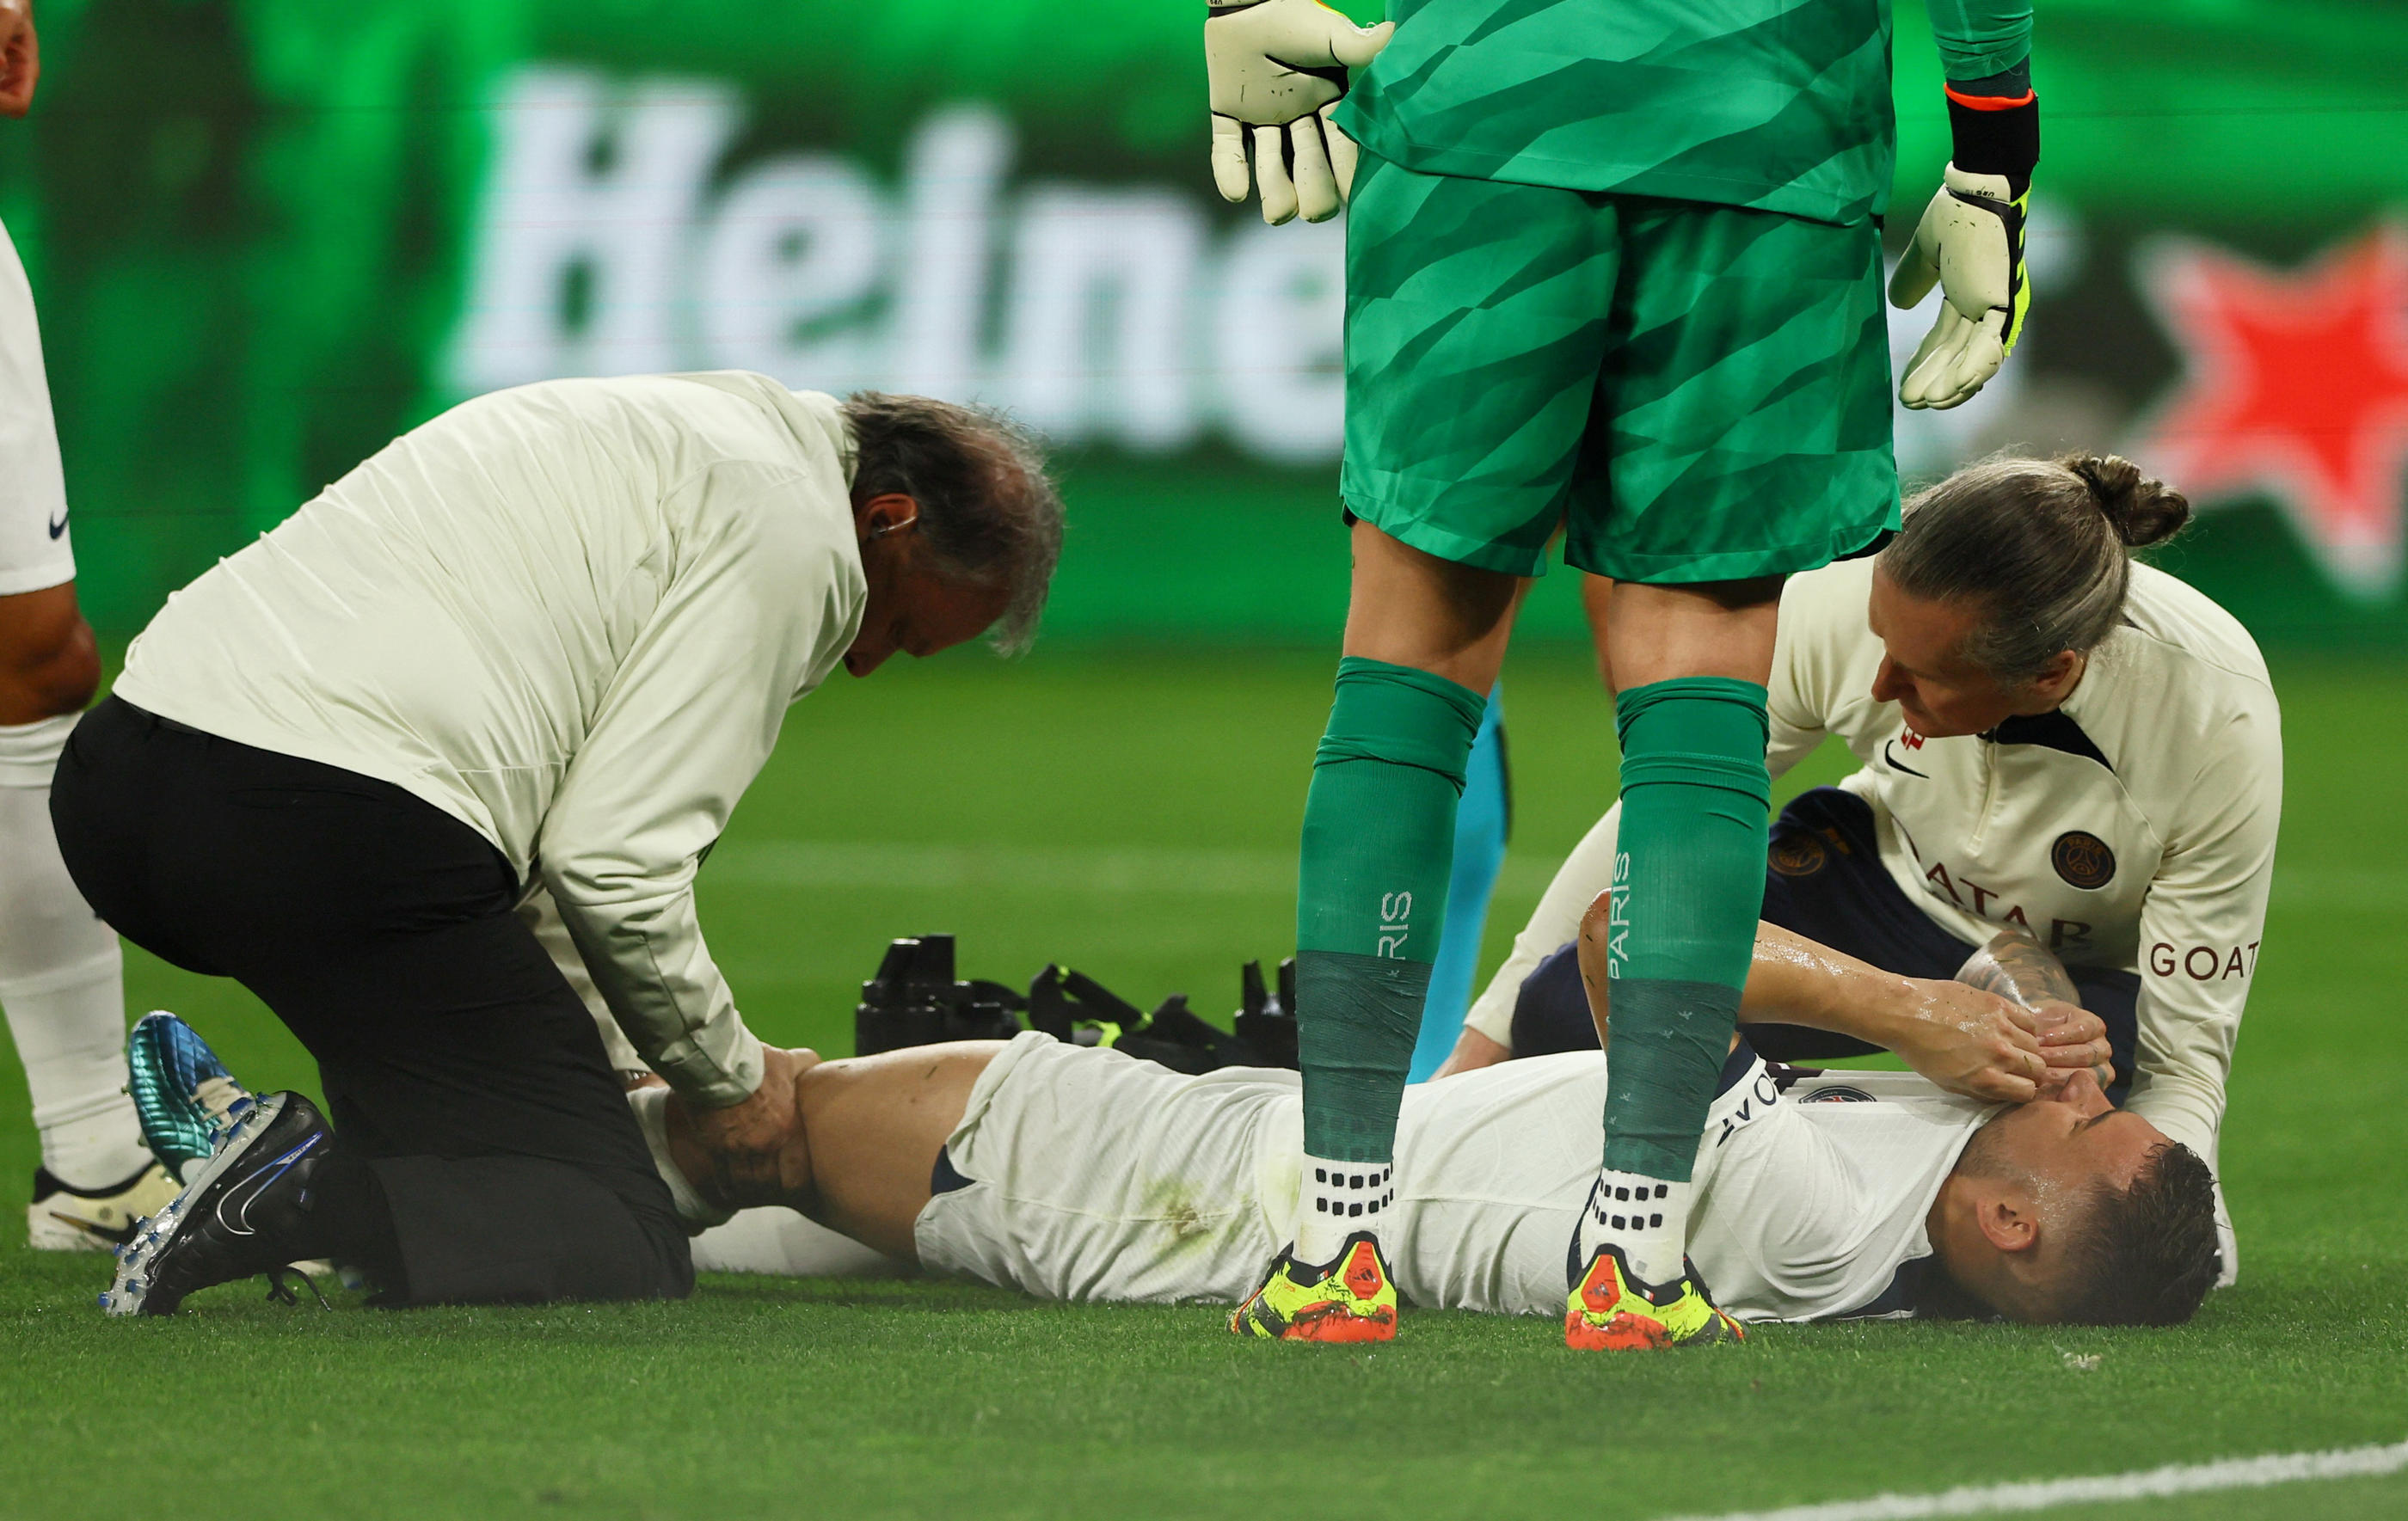 Le défenseur du Paris Saint-Germain Lucas Hernandez, sorti sur blessure mercredi contre Dortmund, « souffre d'une rupture du ligament croisé antérieur du genou gauche » et se dirige vers un forfait pour l'Euro en juin, a annoncé jeudi le club parisien. Reuters/Thilo Schmuelgen